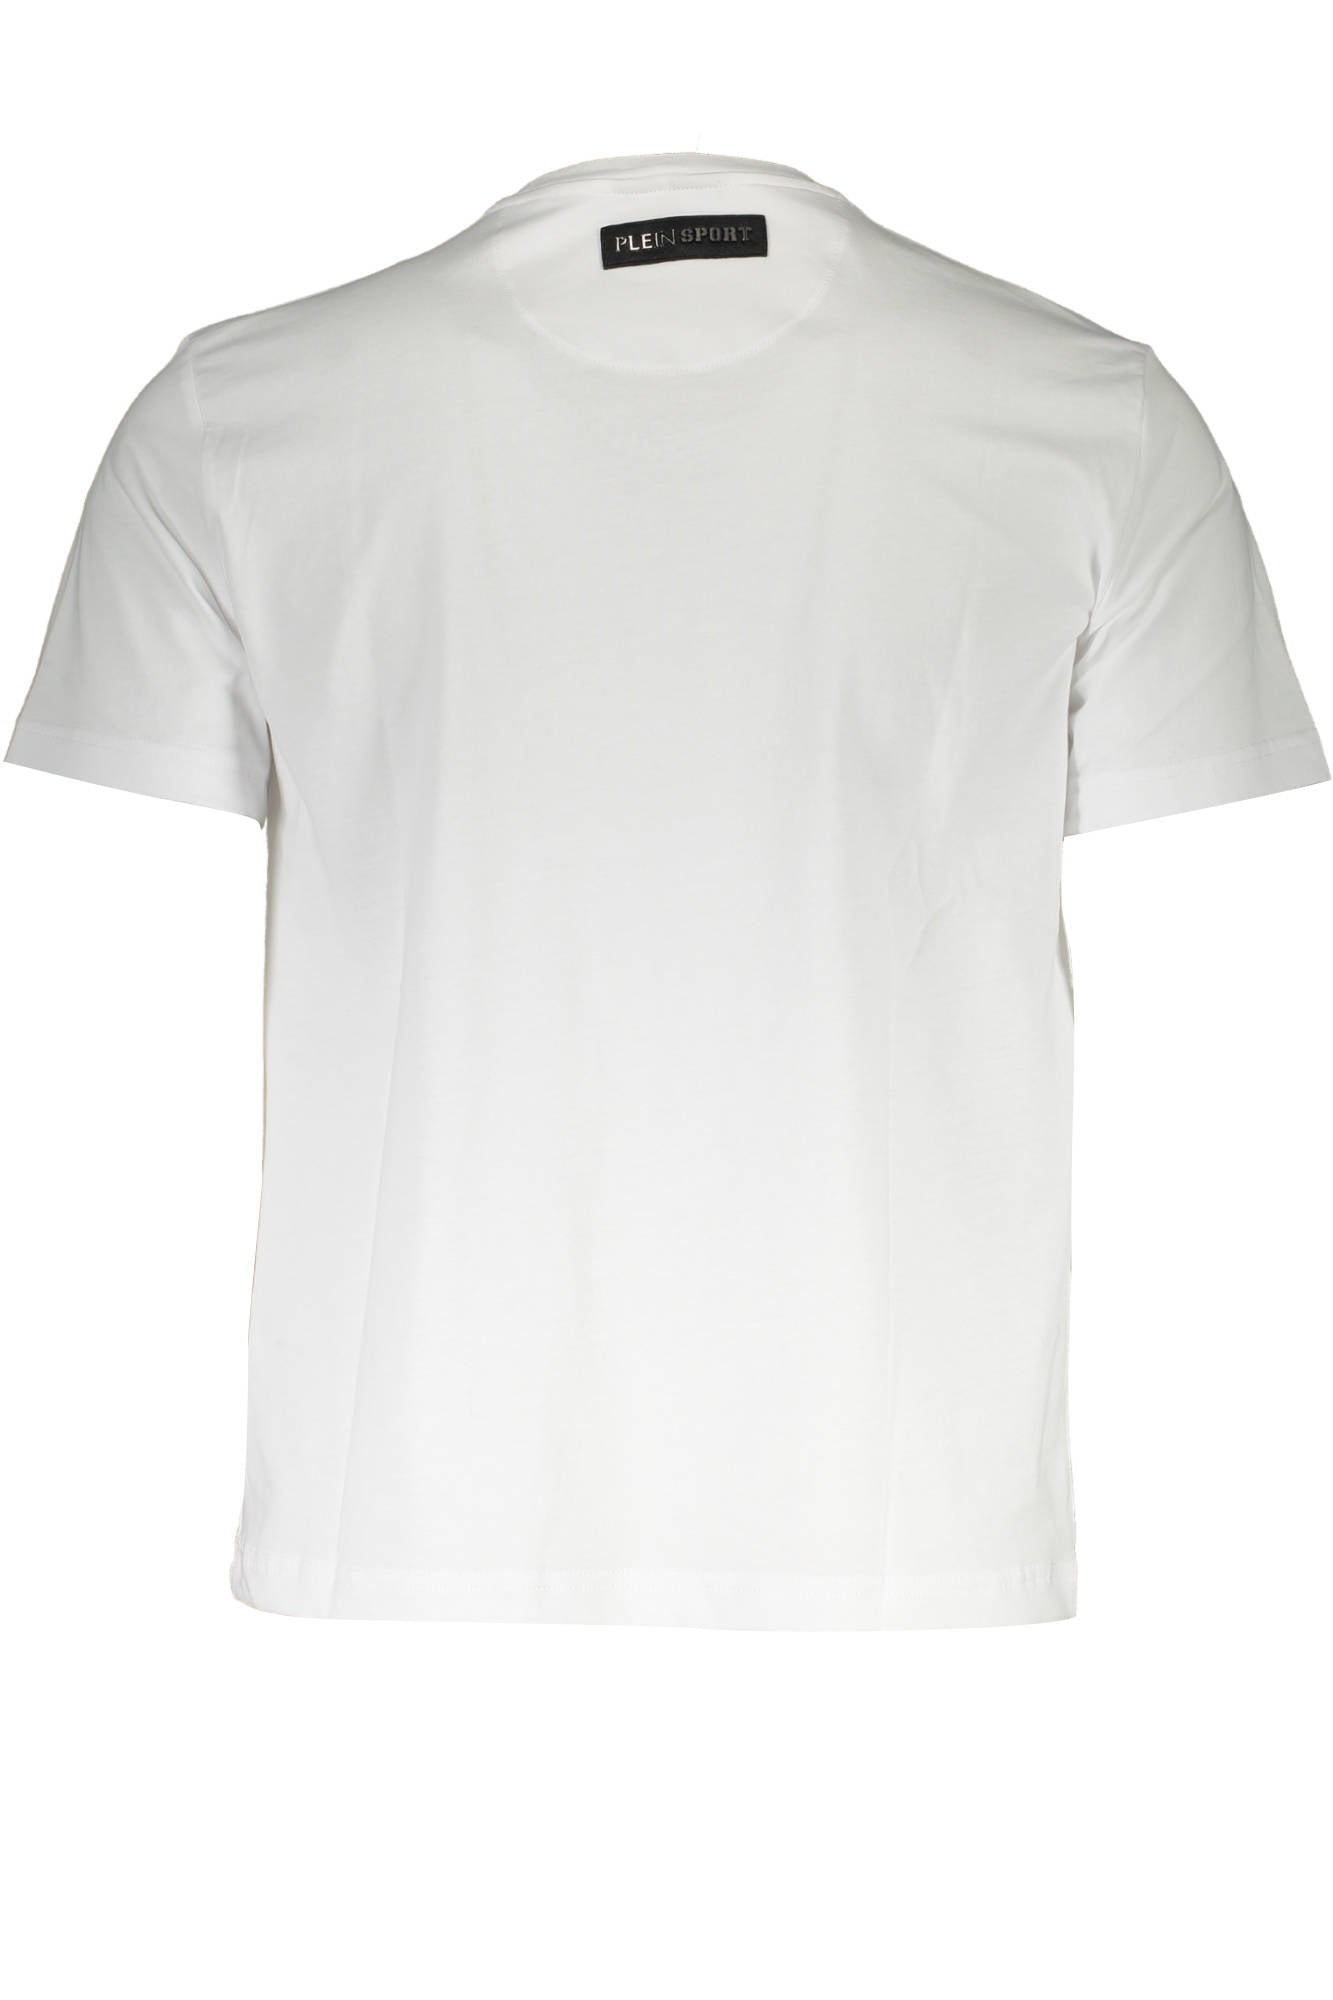 Plein Sport White T-Shirt - Fizigo